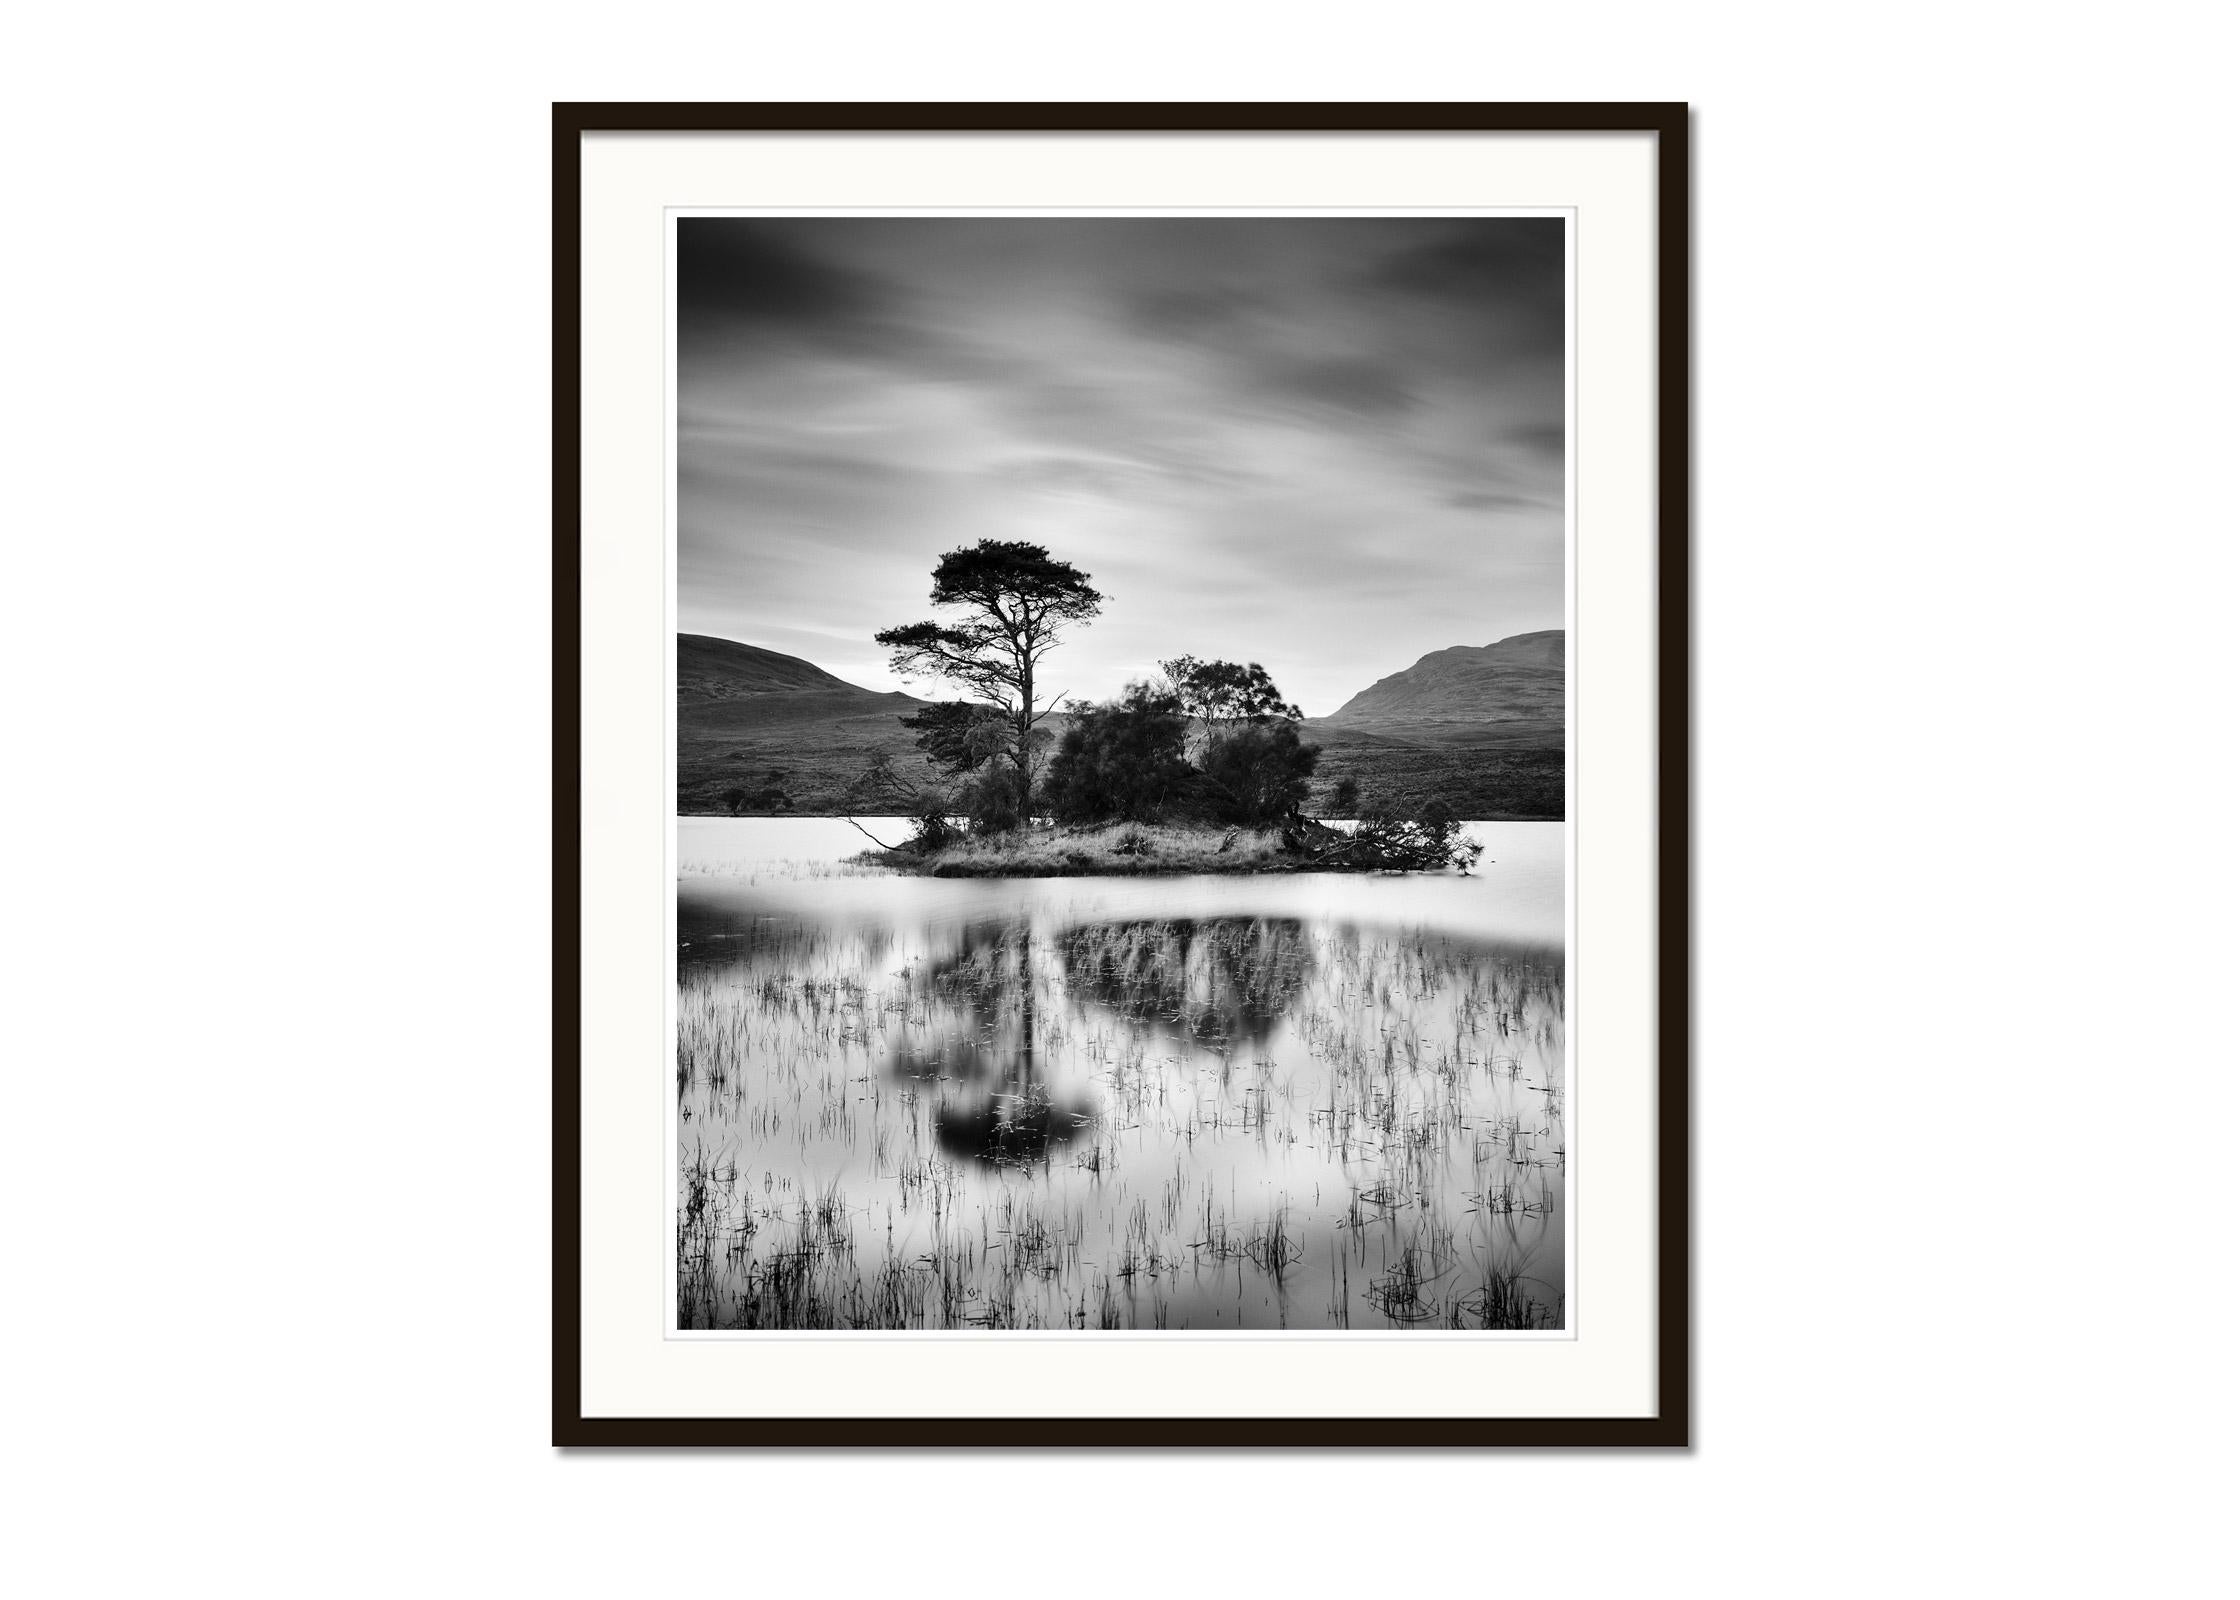 Nach dem Sonnenuntergang, Baum, Insel, Schottland, Schwarz-Weiß-Landschaftsfotografie (Grau), Black and White Photograph, von Gerald Berghammer